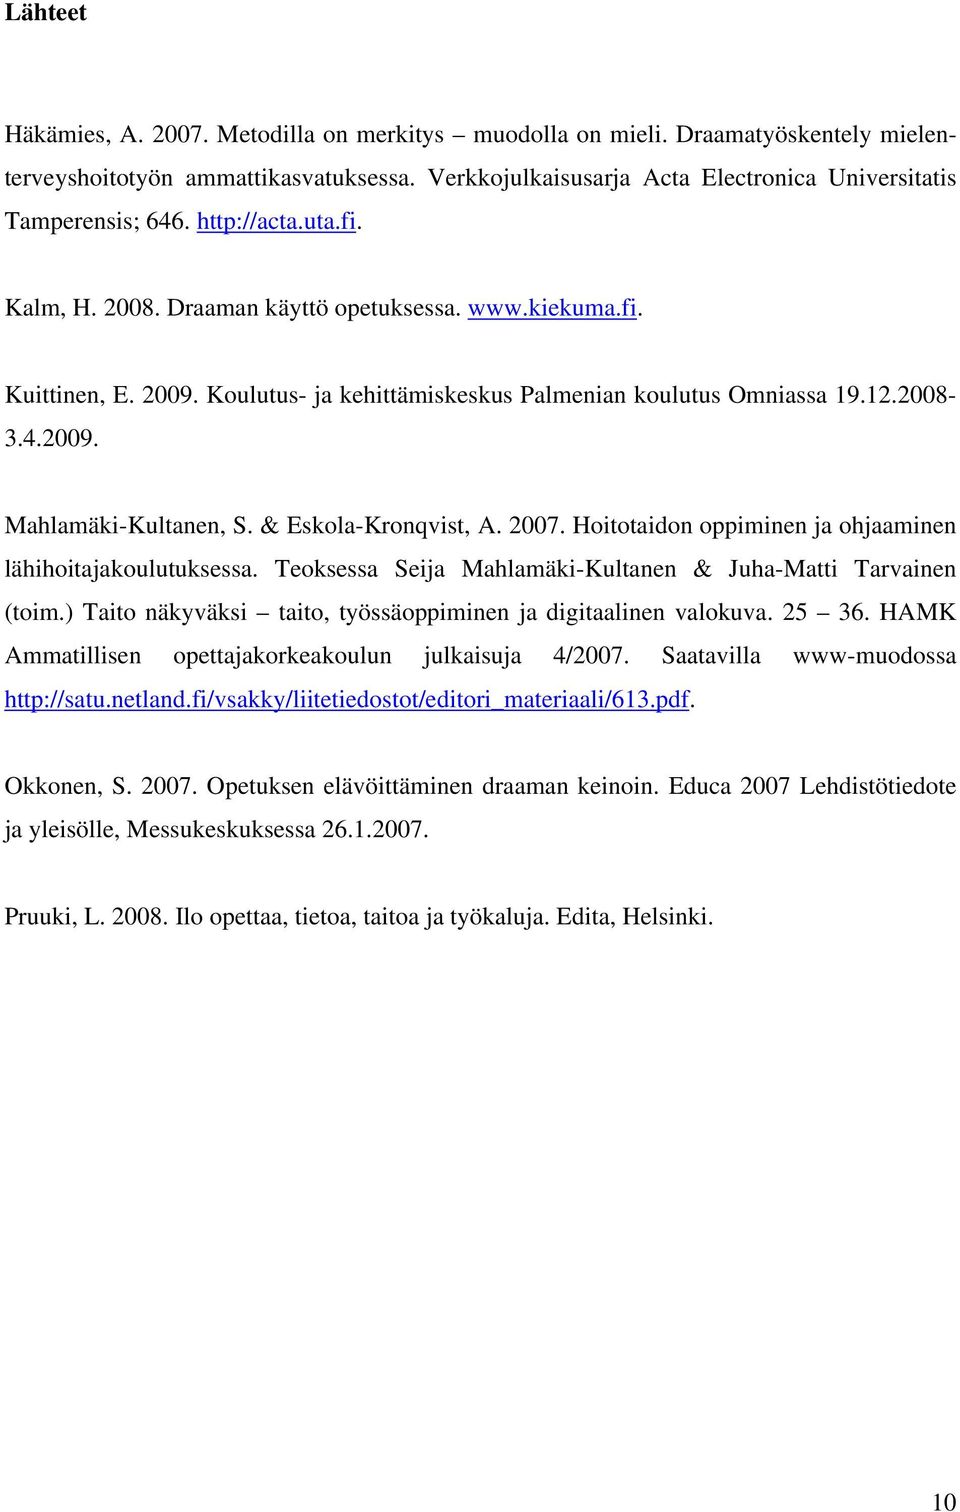 & Eskola-Kronqvist, A. 2007. Hoitotaidon oppiminen ja ohjaaminen lähihoitajakoulutuksessa. Teoksessa Seija Mahlamäki-Kultanen & Juha-Matti Tarvainen (toim.